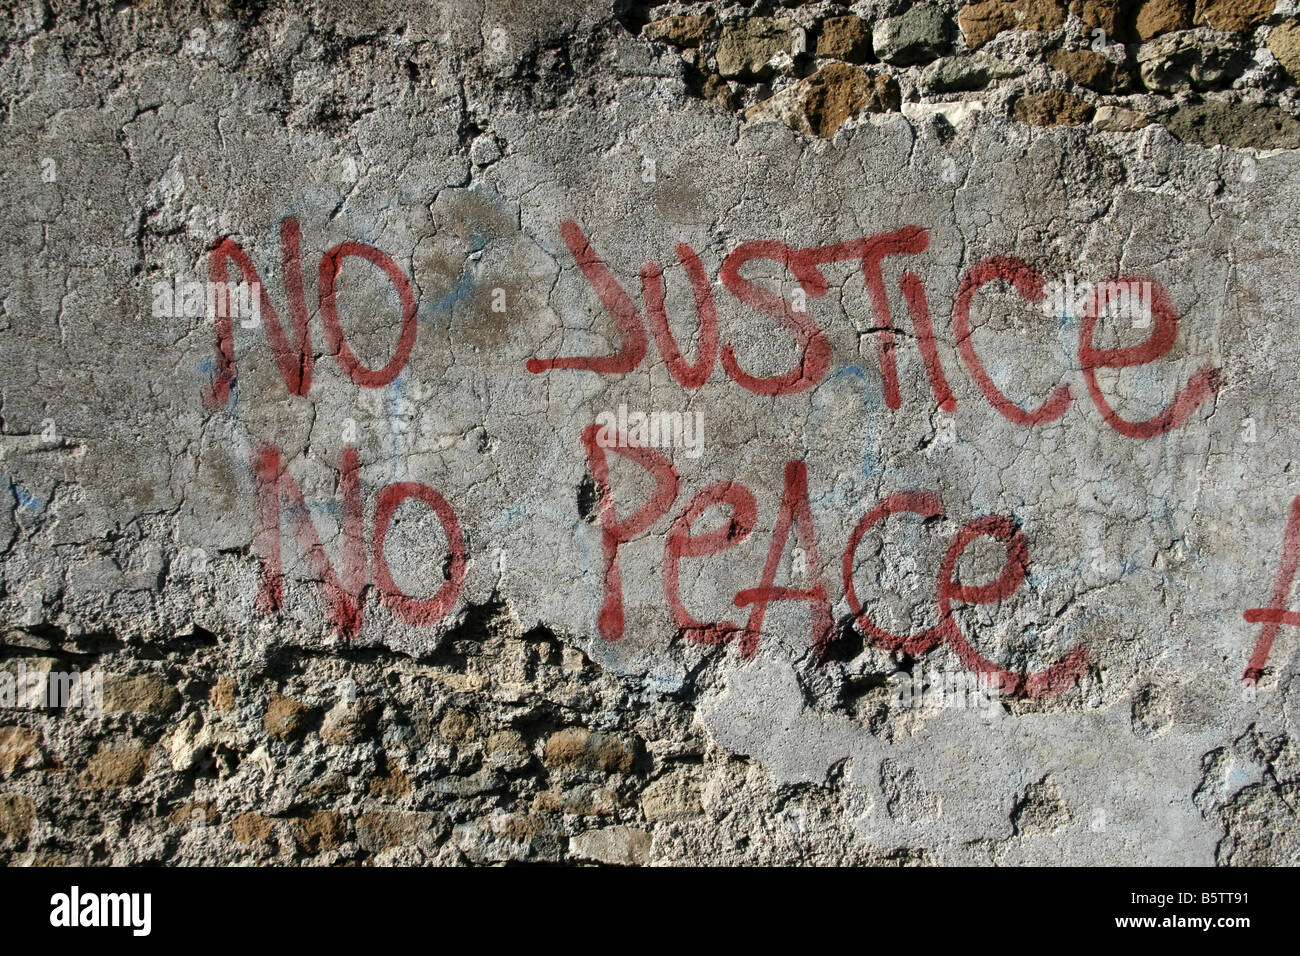 Nessuna giustizia nessuna pace frase graffiti sulla parete Foto Stock